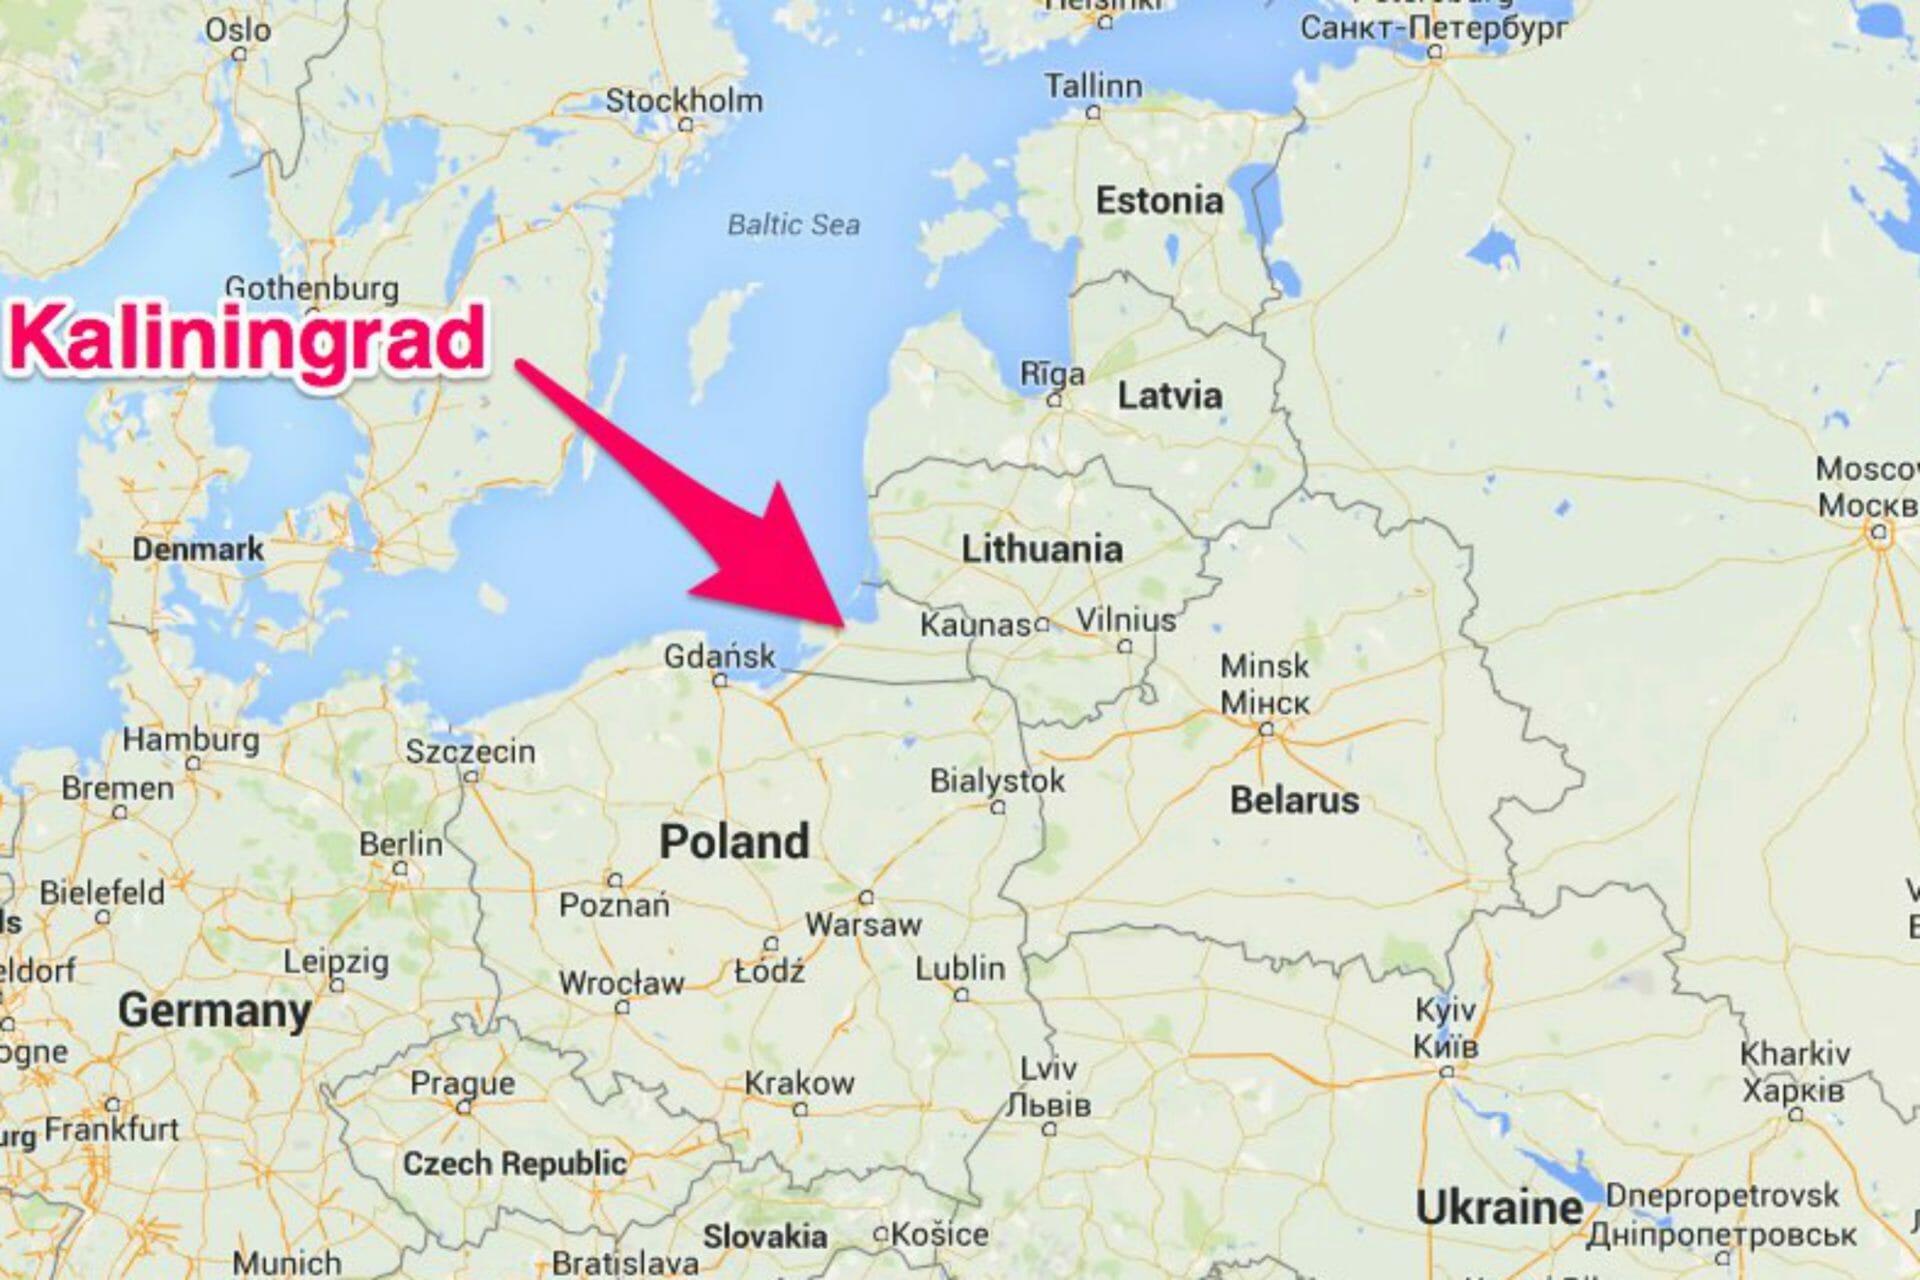 ”Nu vă jucați cu focul!” Mișcări masive de trupe în enclava rusă Kaliningrad